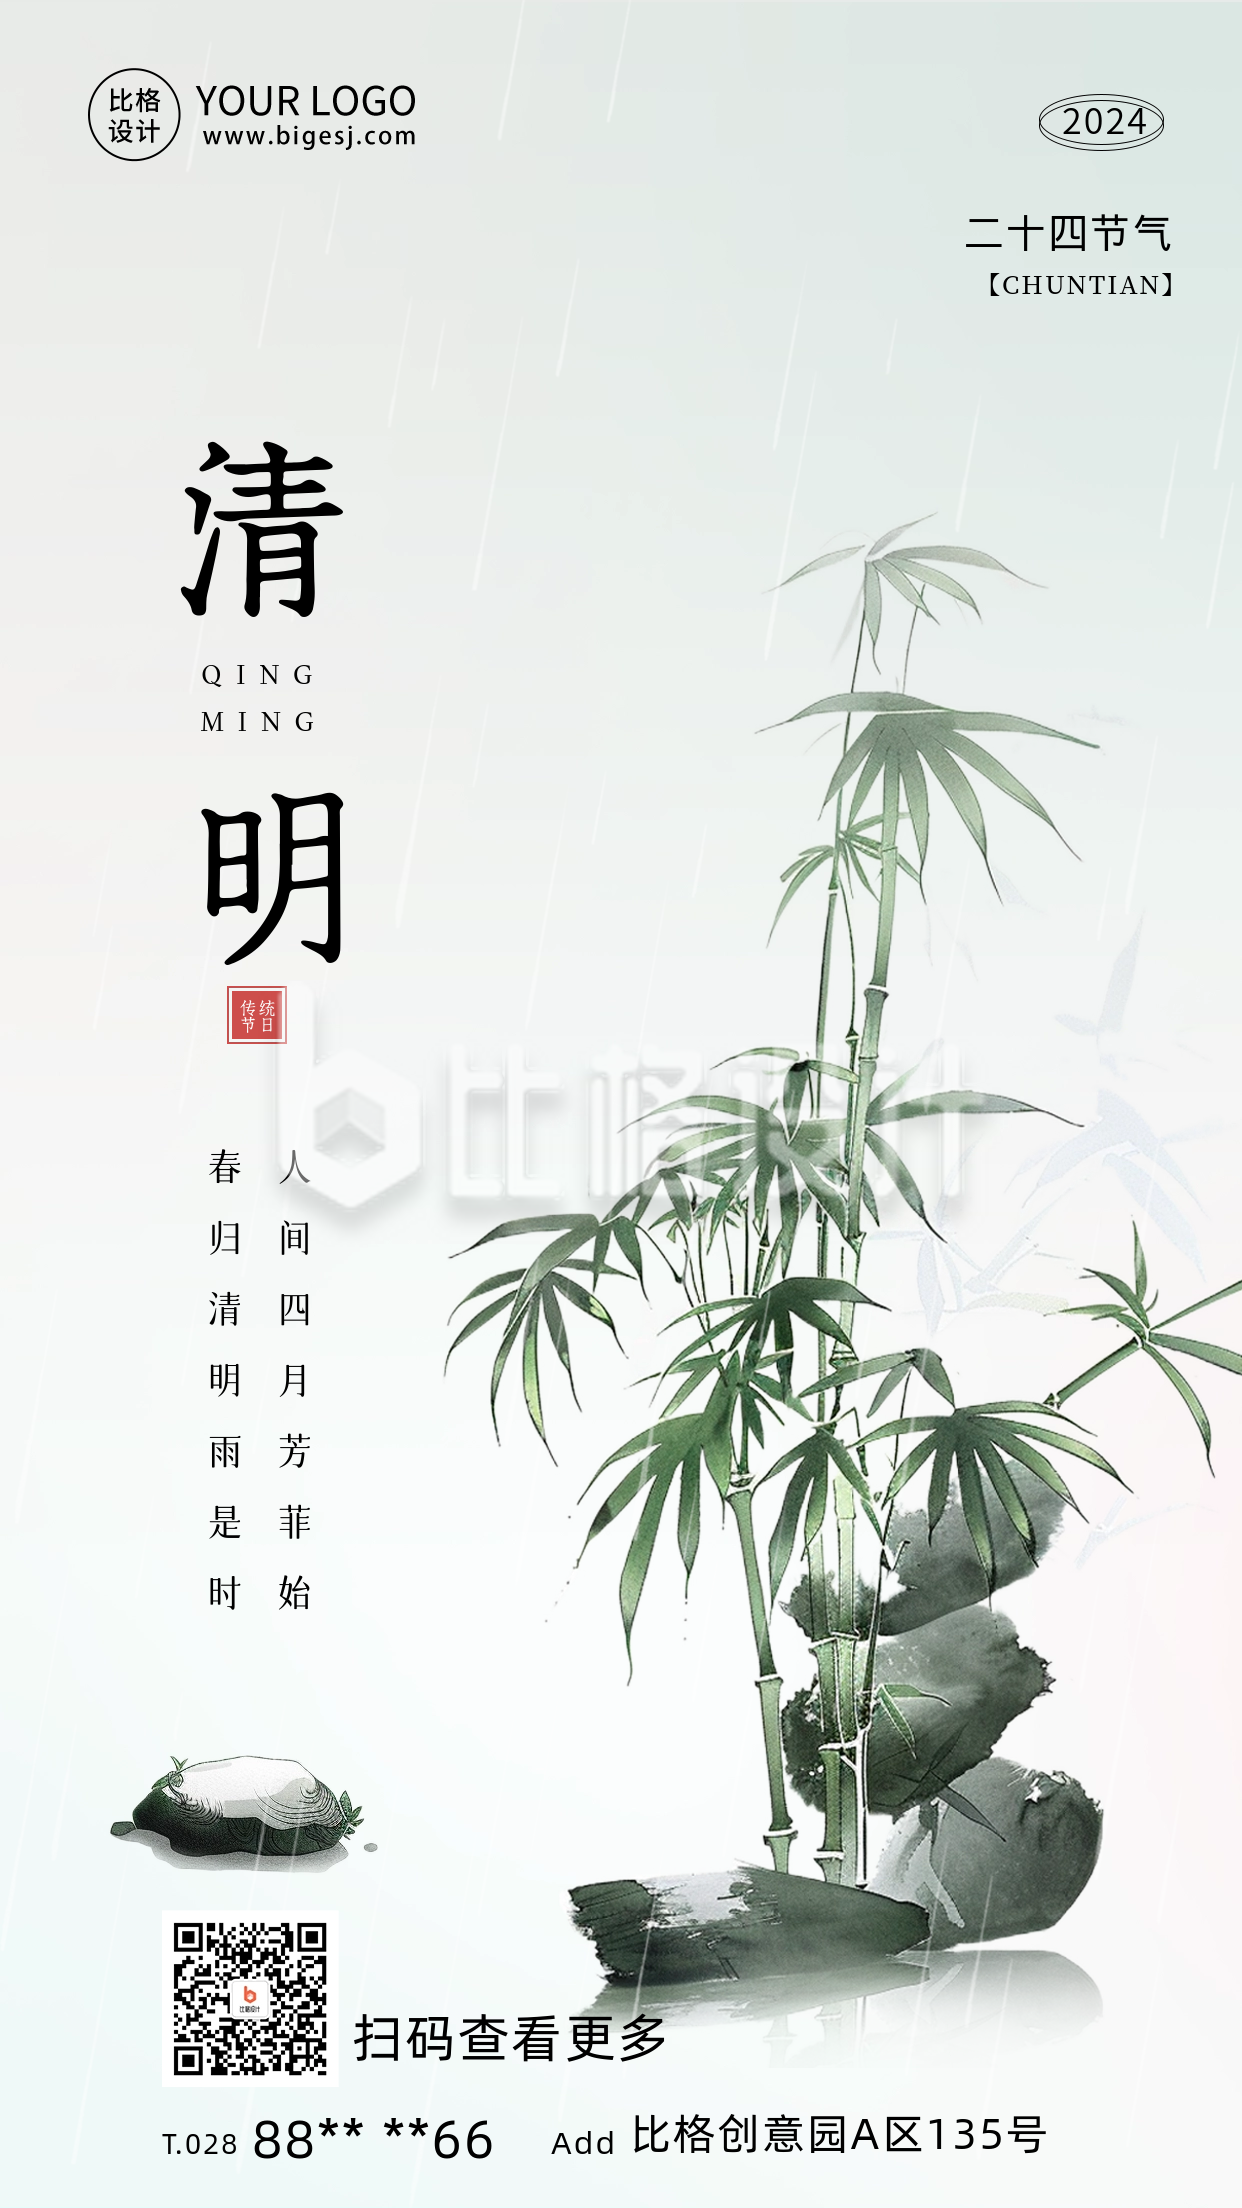 清明节传统节日祝福海报